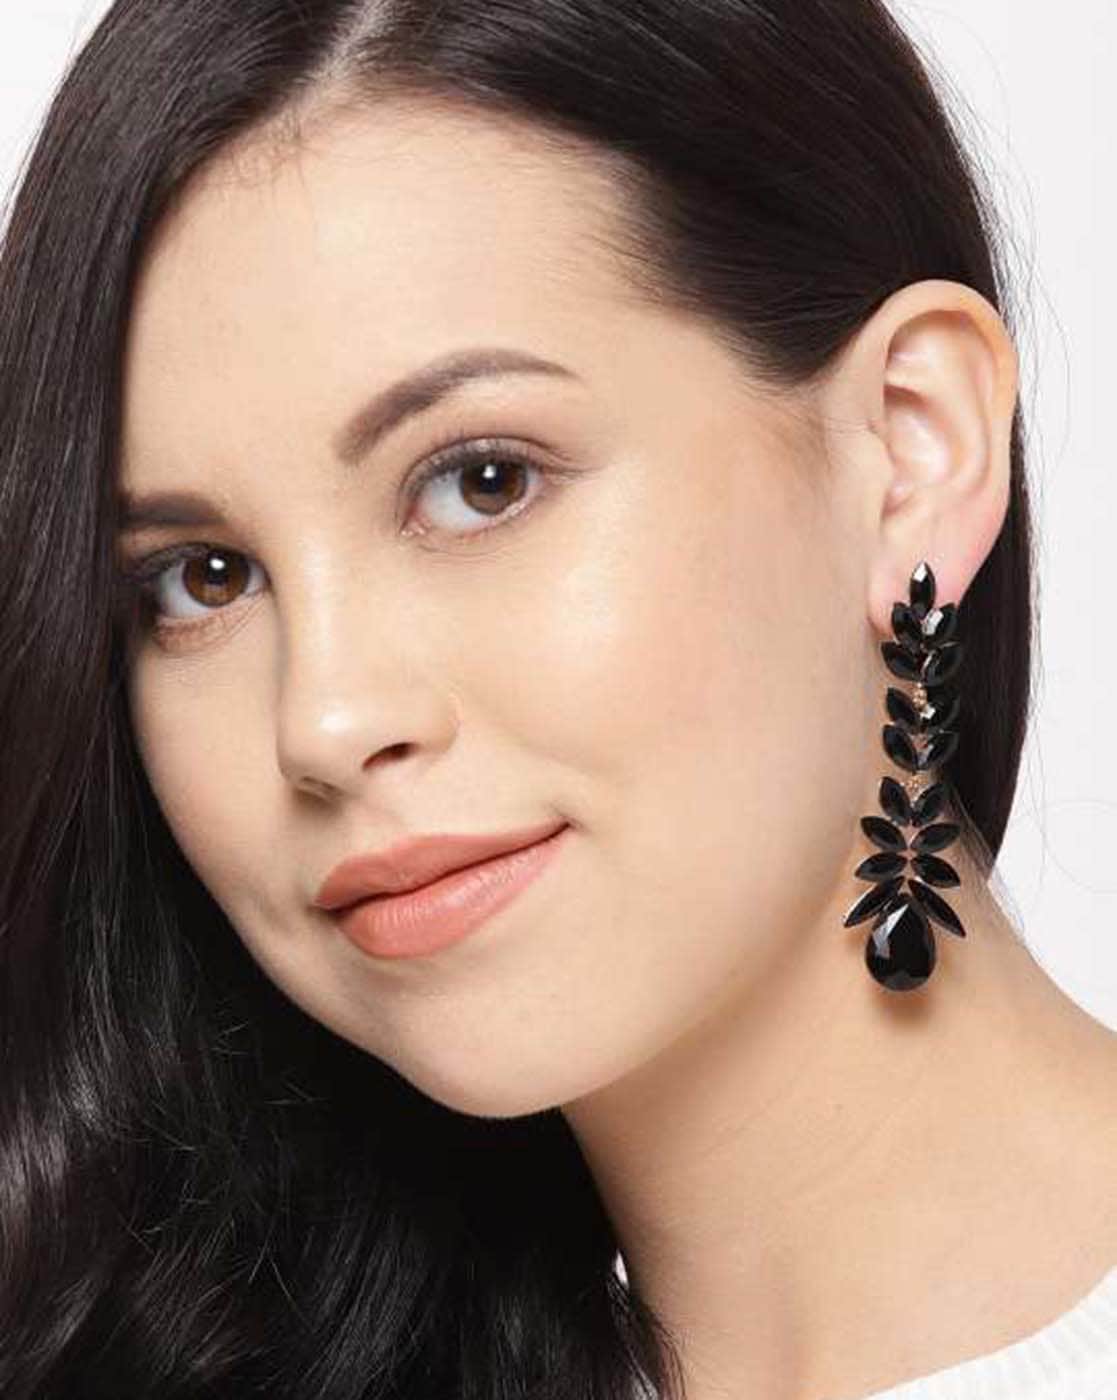 Buy Black Earrings for Women by Youbella Online | Ajio.com